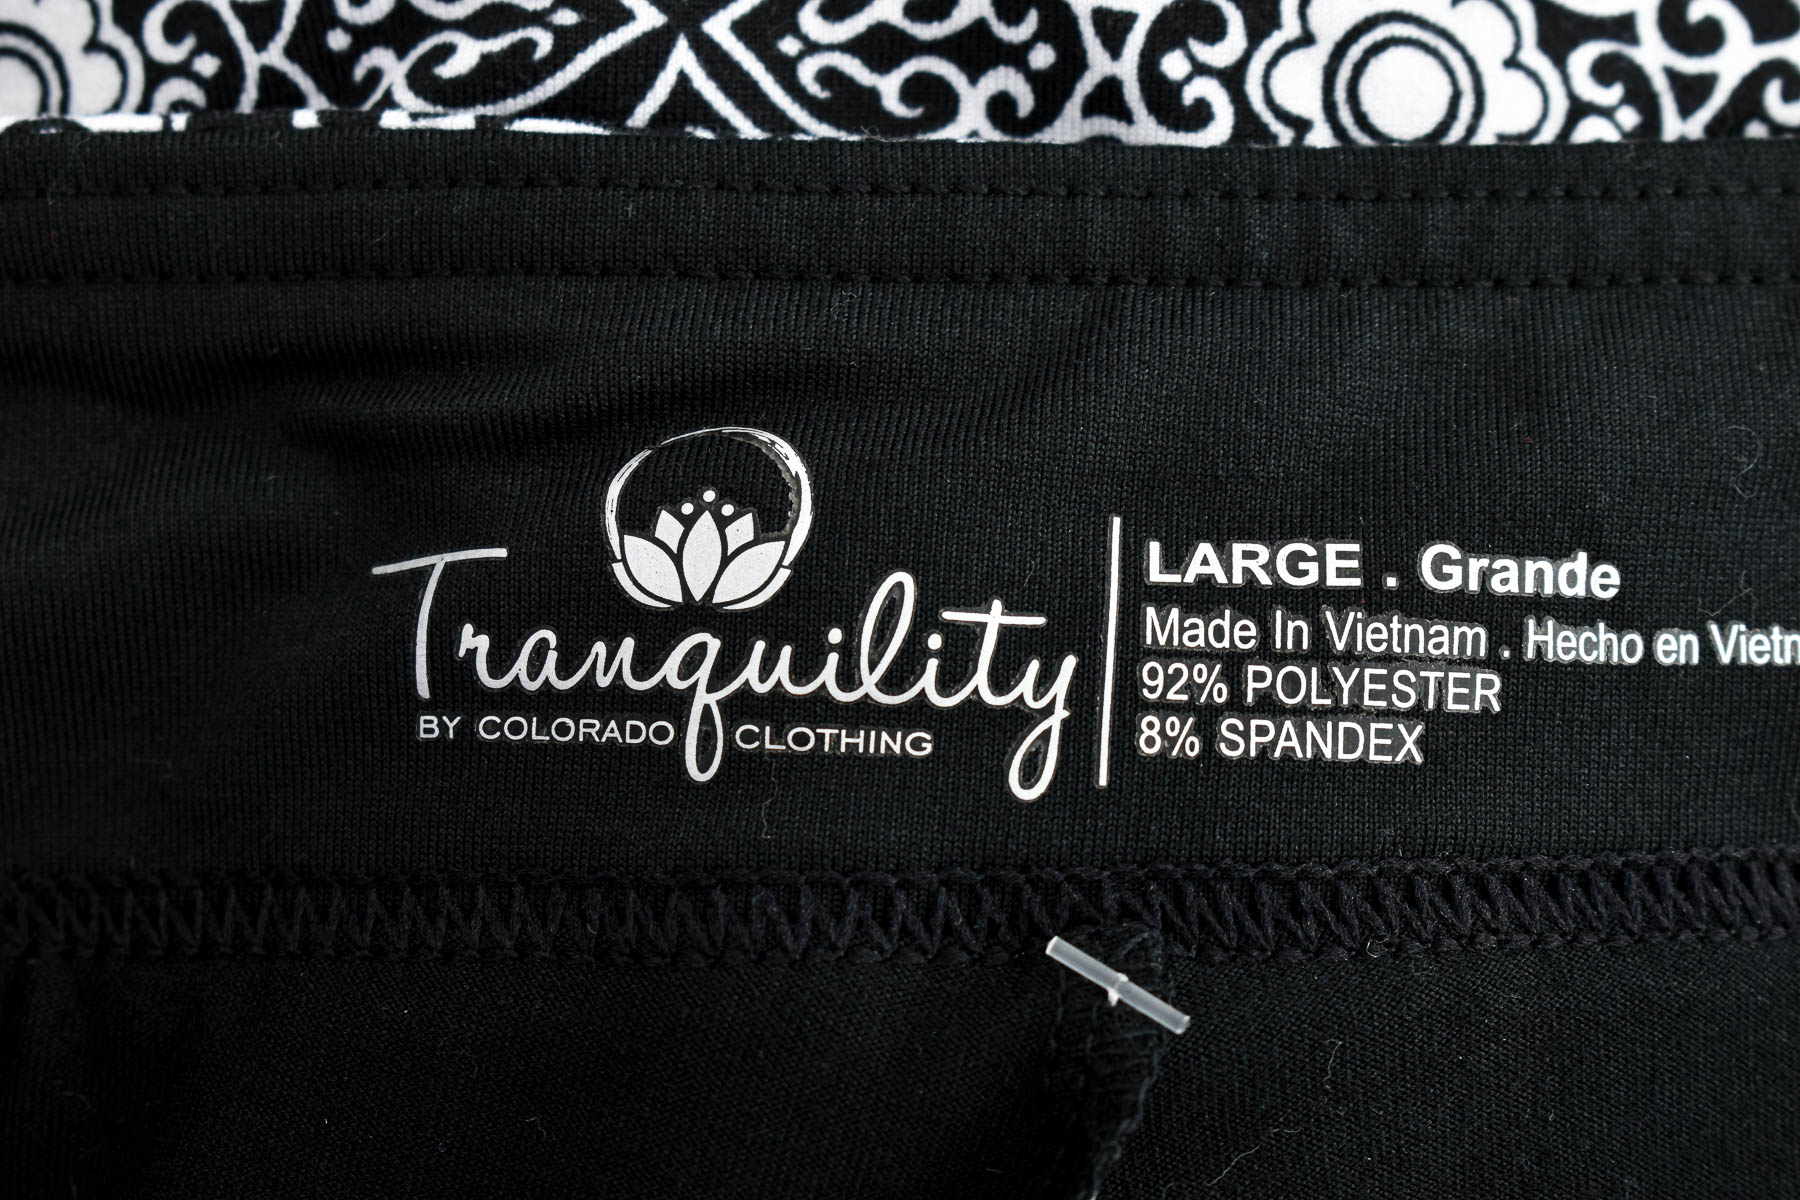 Spodnie spódnicowe - Tranquility BY COLORADO CLOTHING - 2